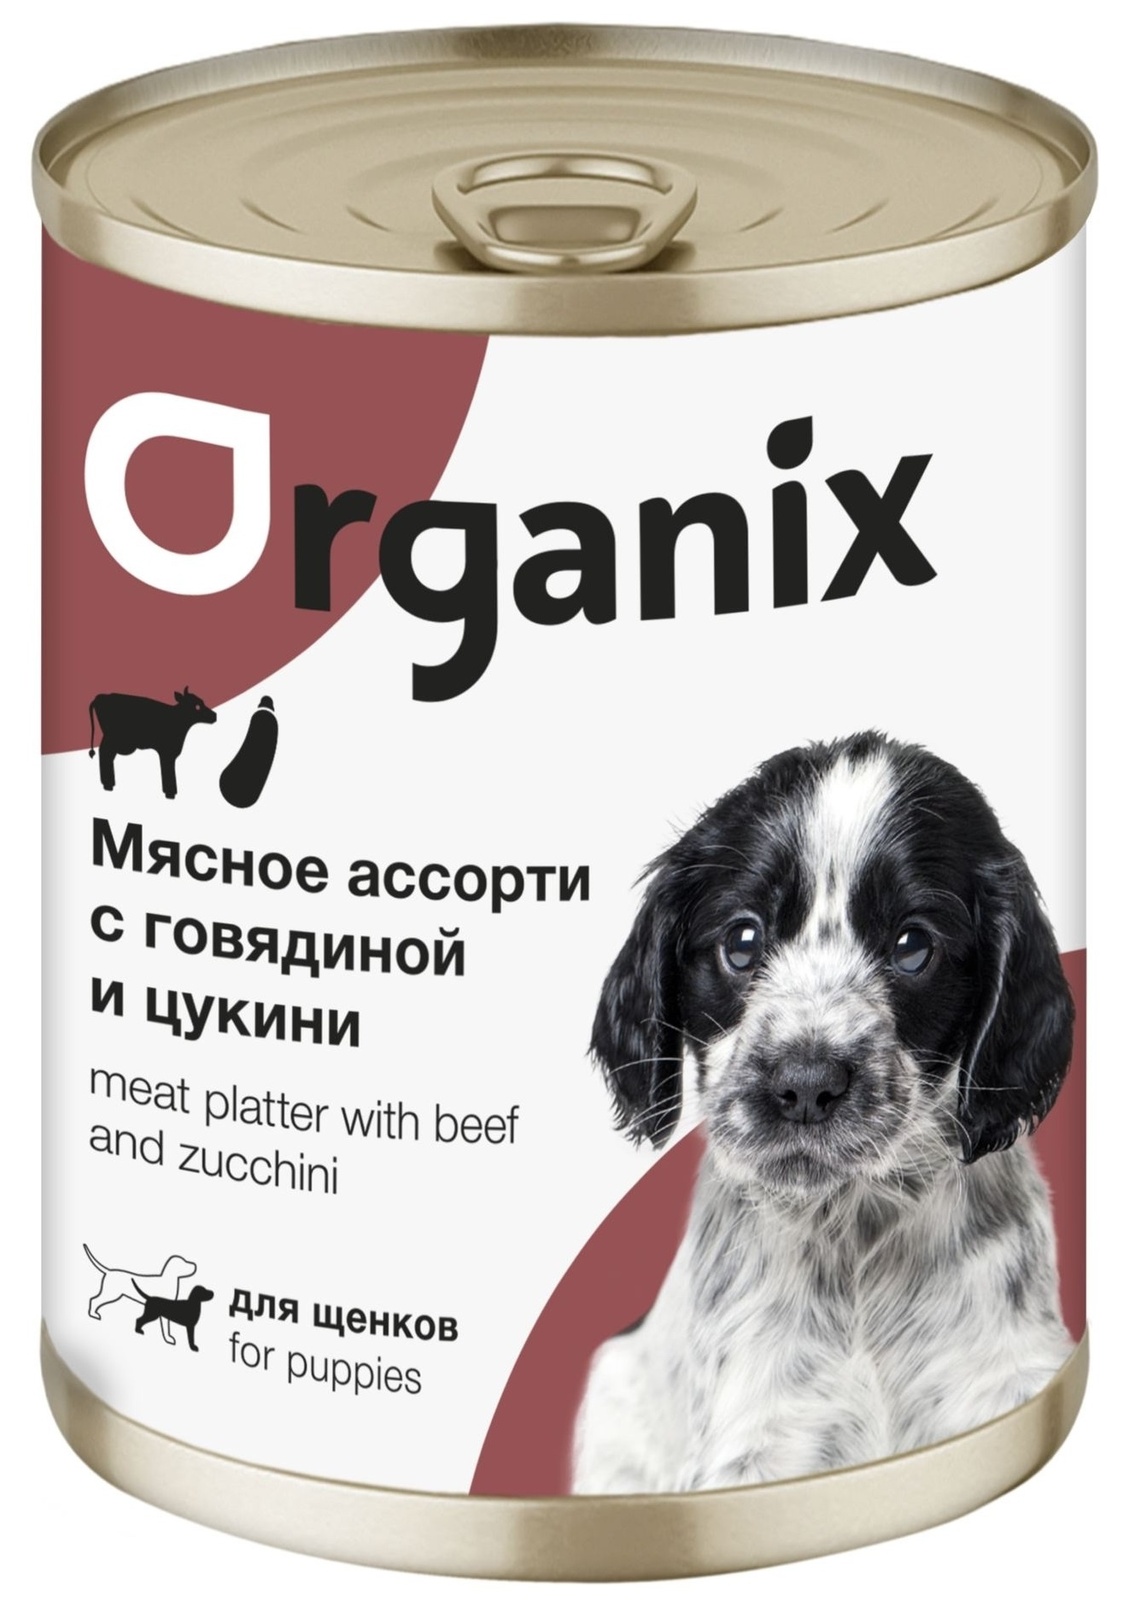 Organix консервы Organix консервы для щенков Мясное ассорти с говядиной и цукини (100 г) organix консервы organix консервы для щенков мясное ассорти с кроликом 100 г